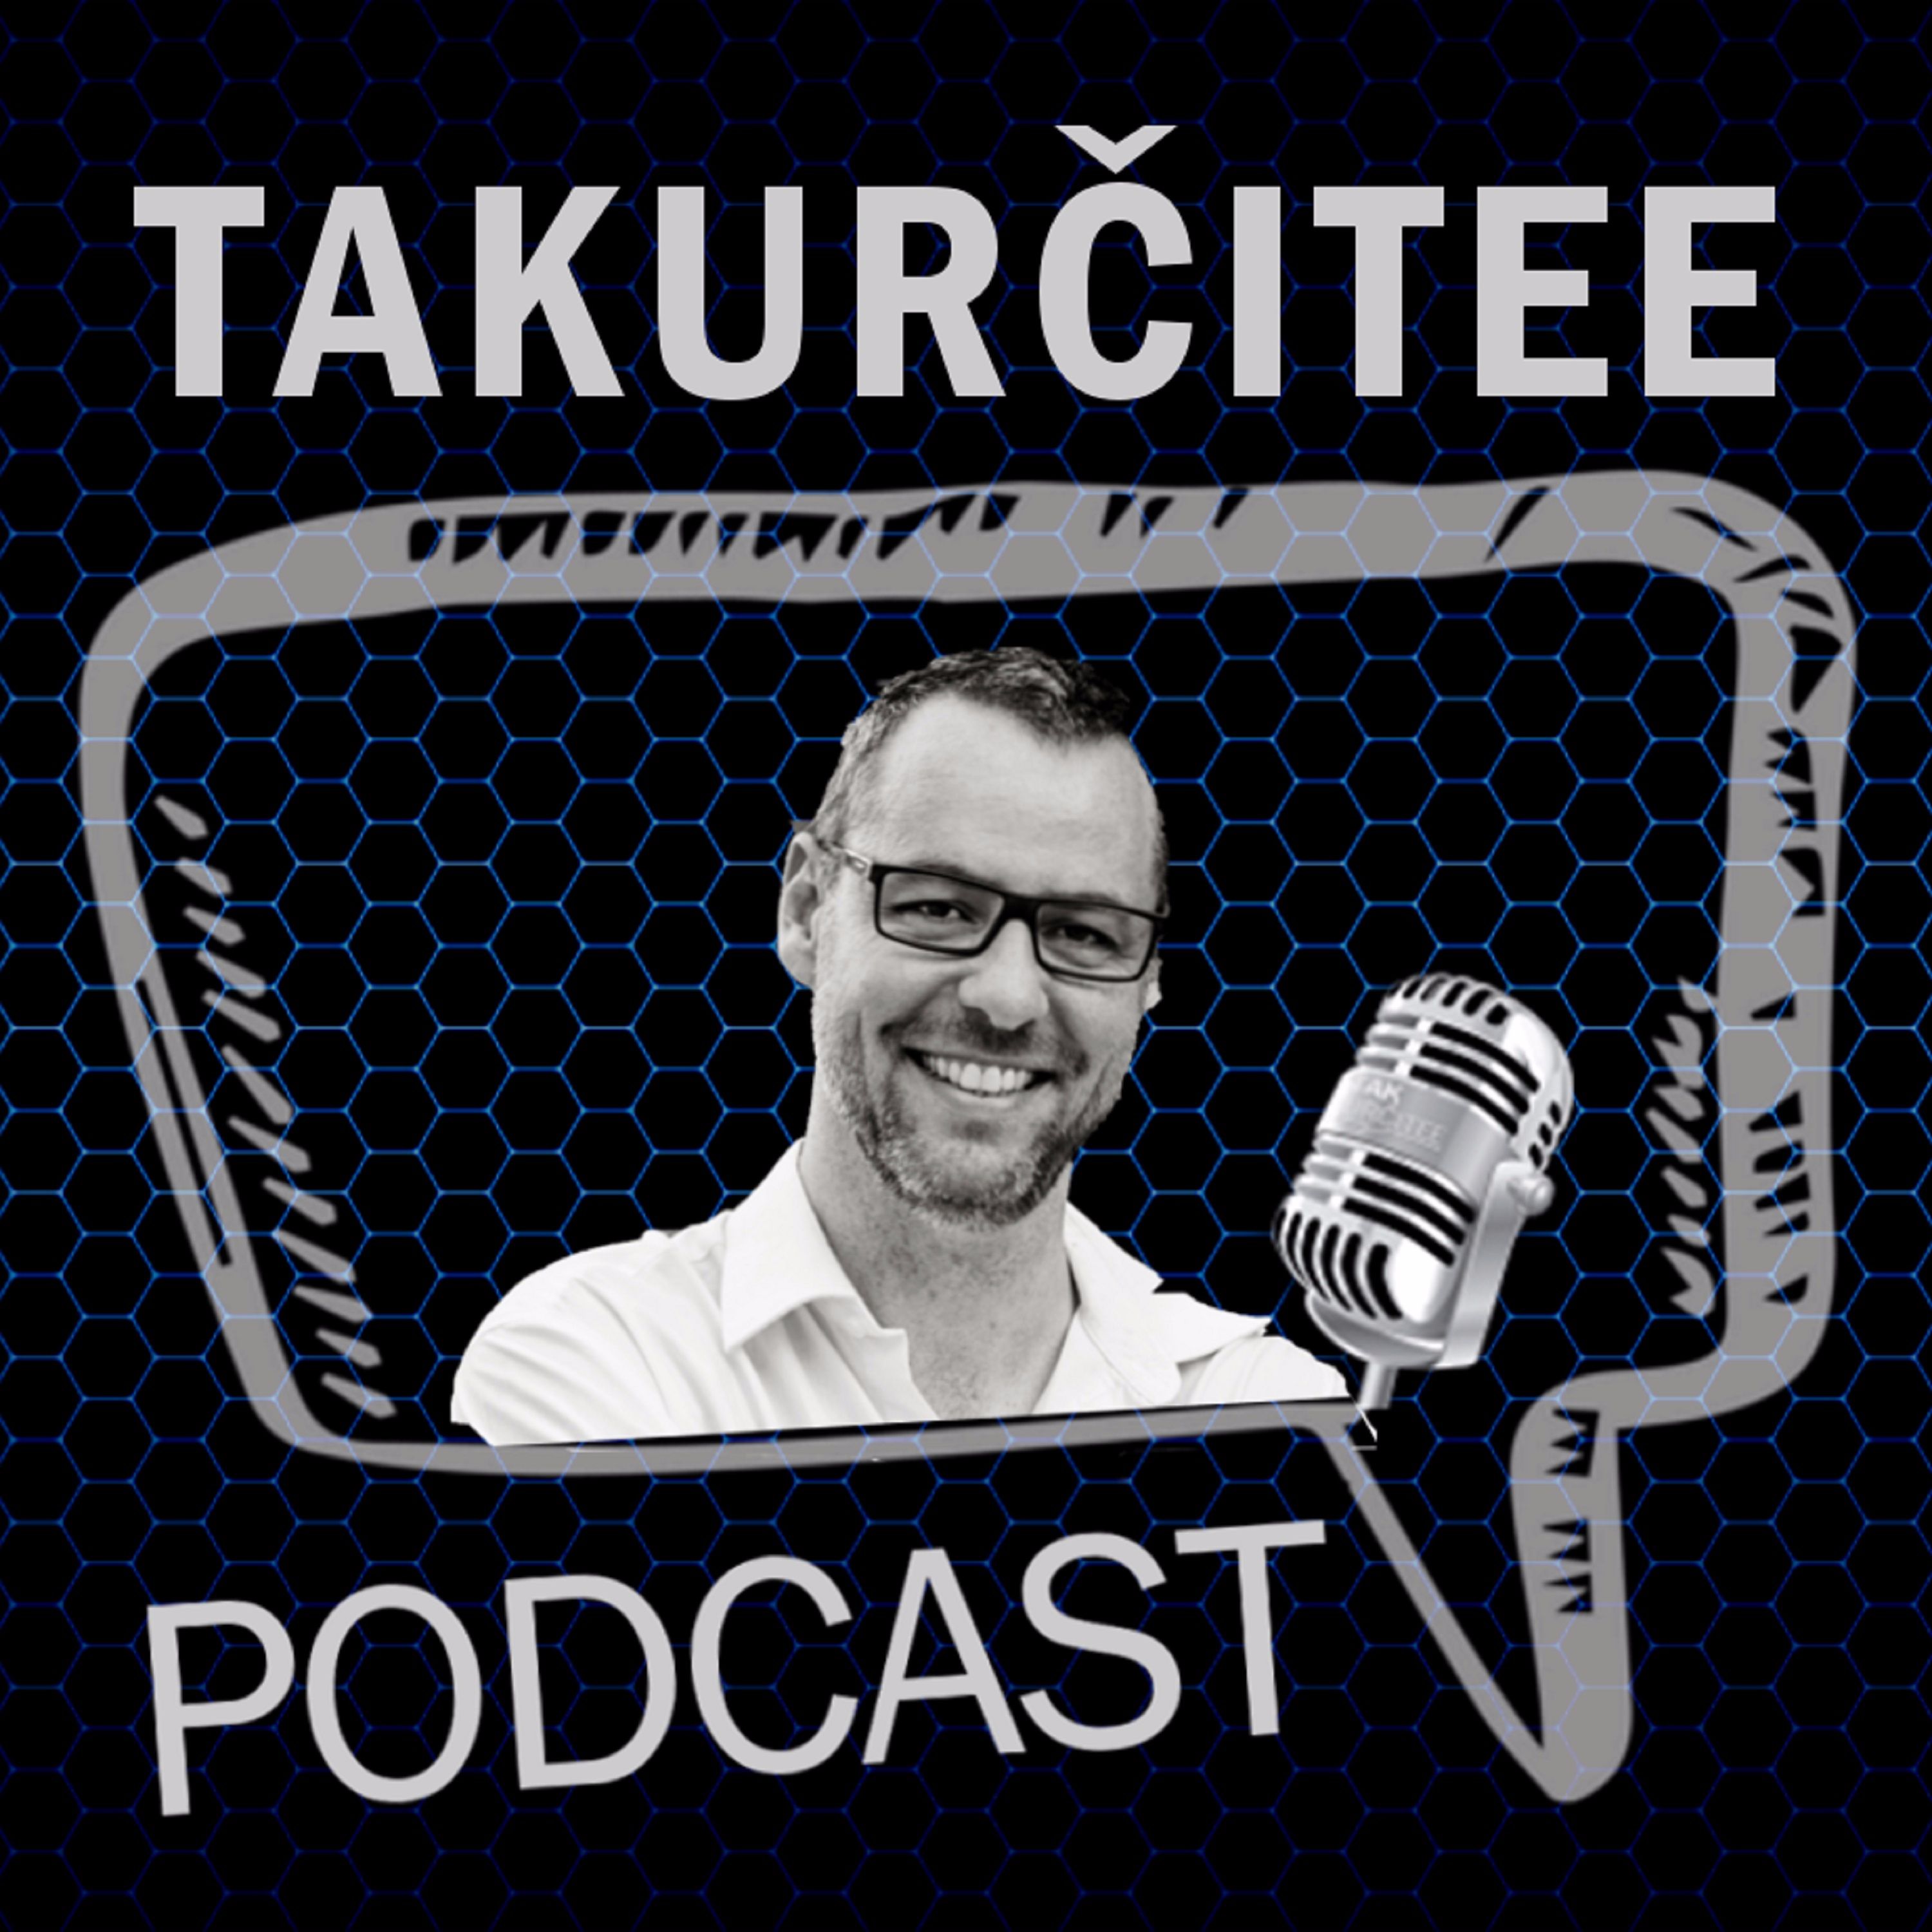 TakUrčitee Podcast, Ep. 9: Samo Marec